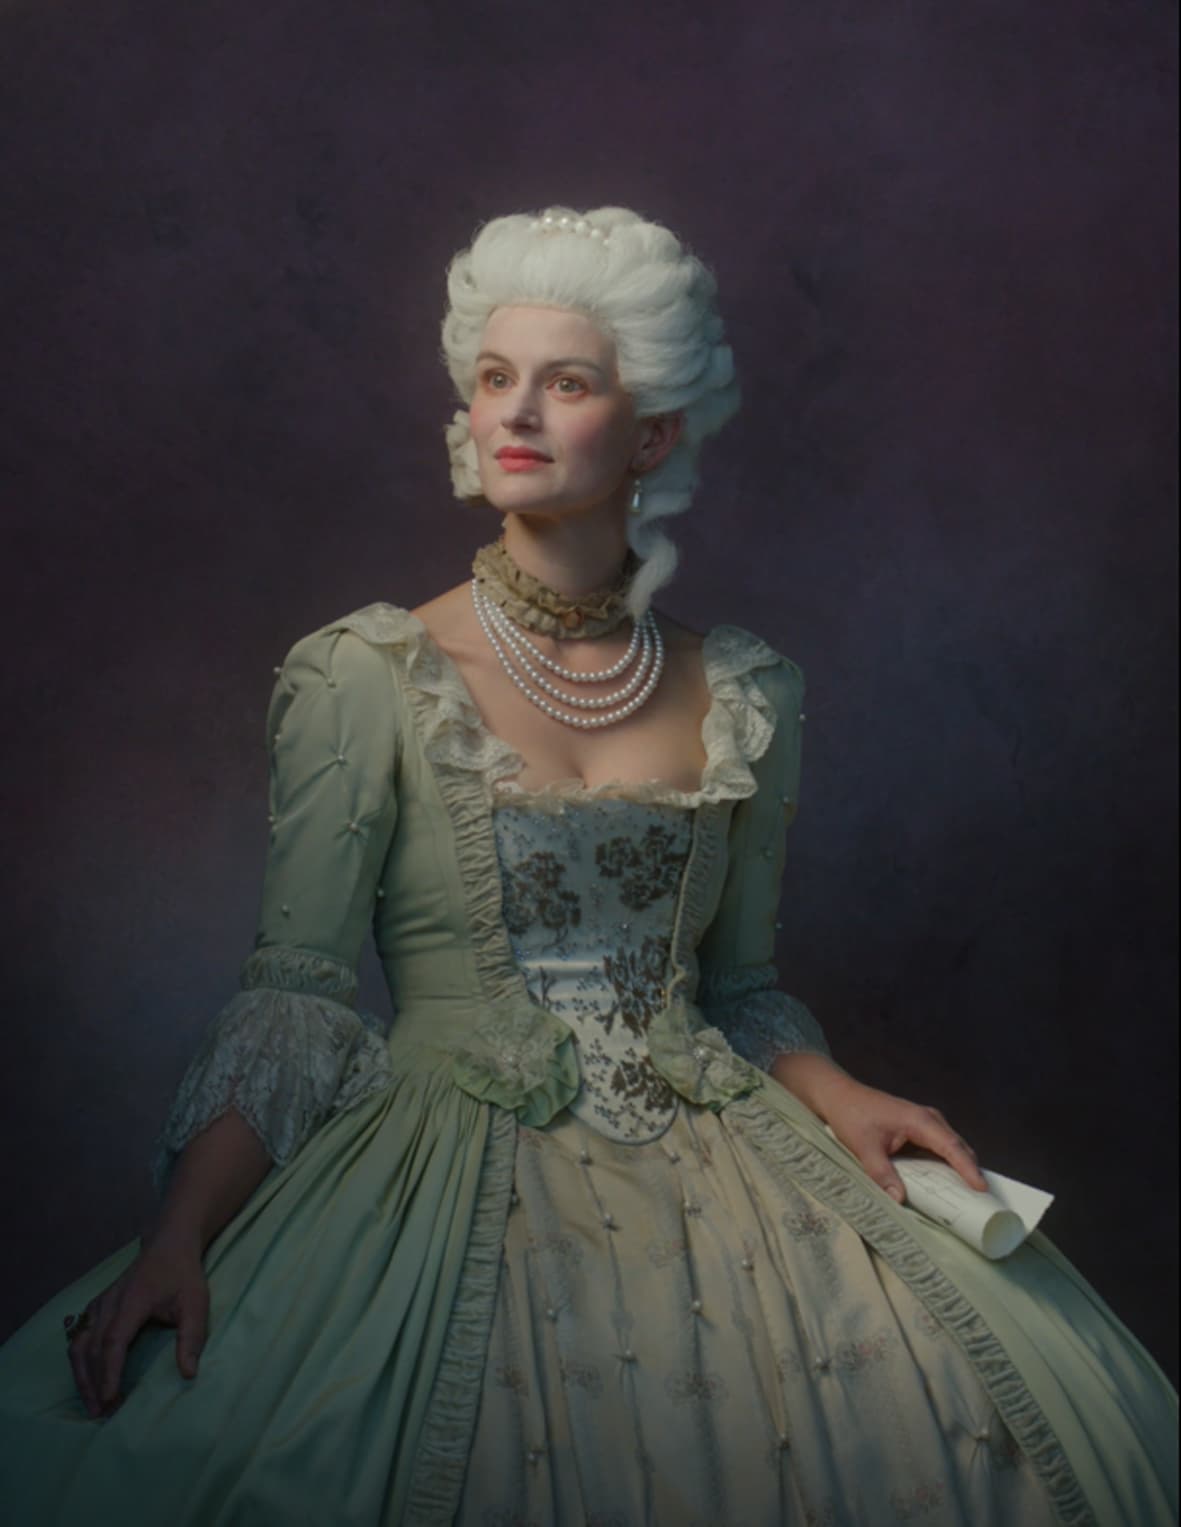 Eine weibliche historische Person mit einer weißen Perücke